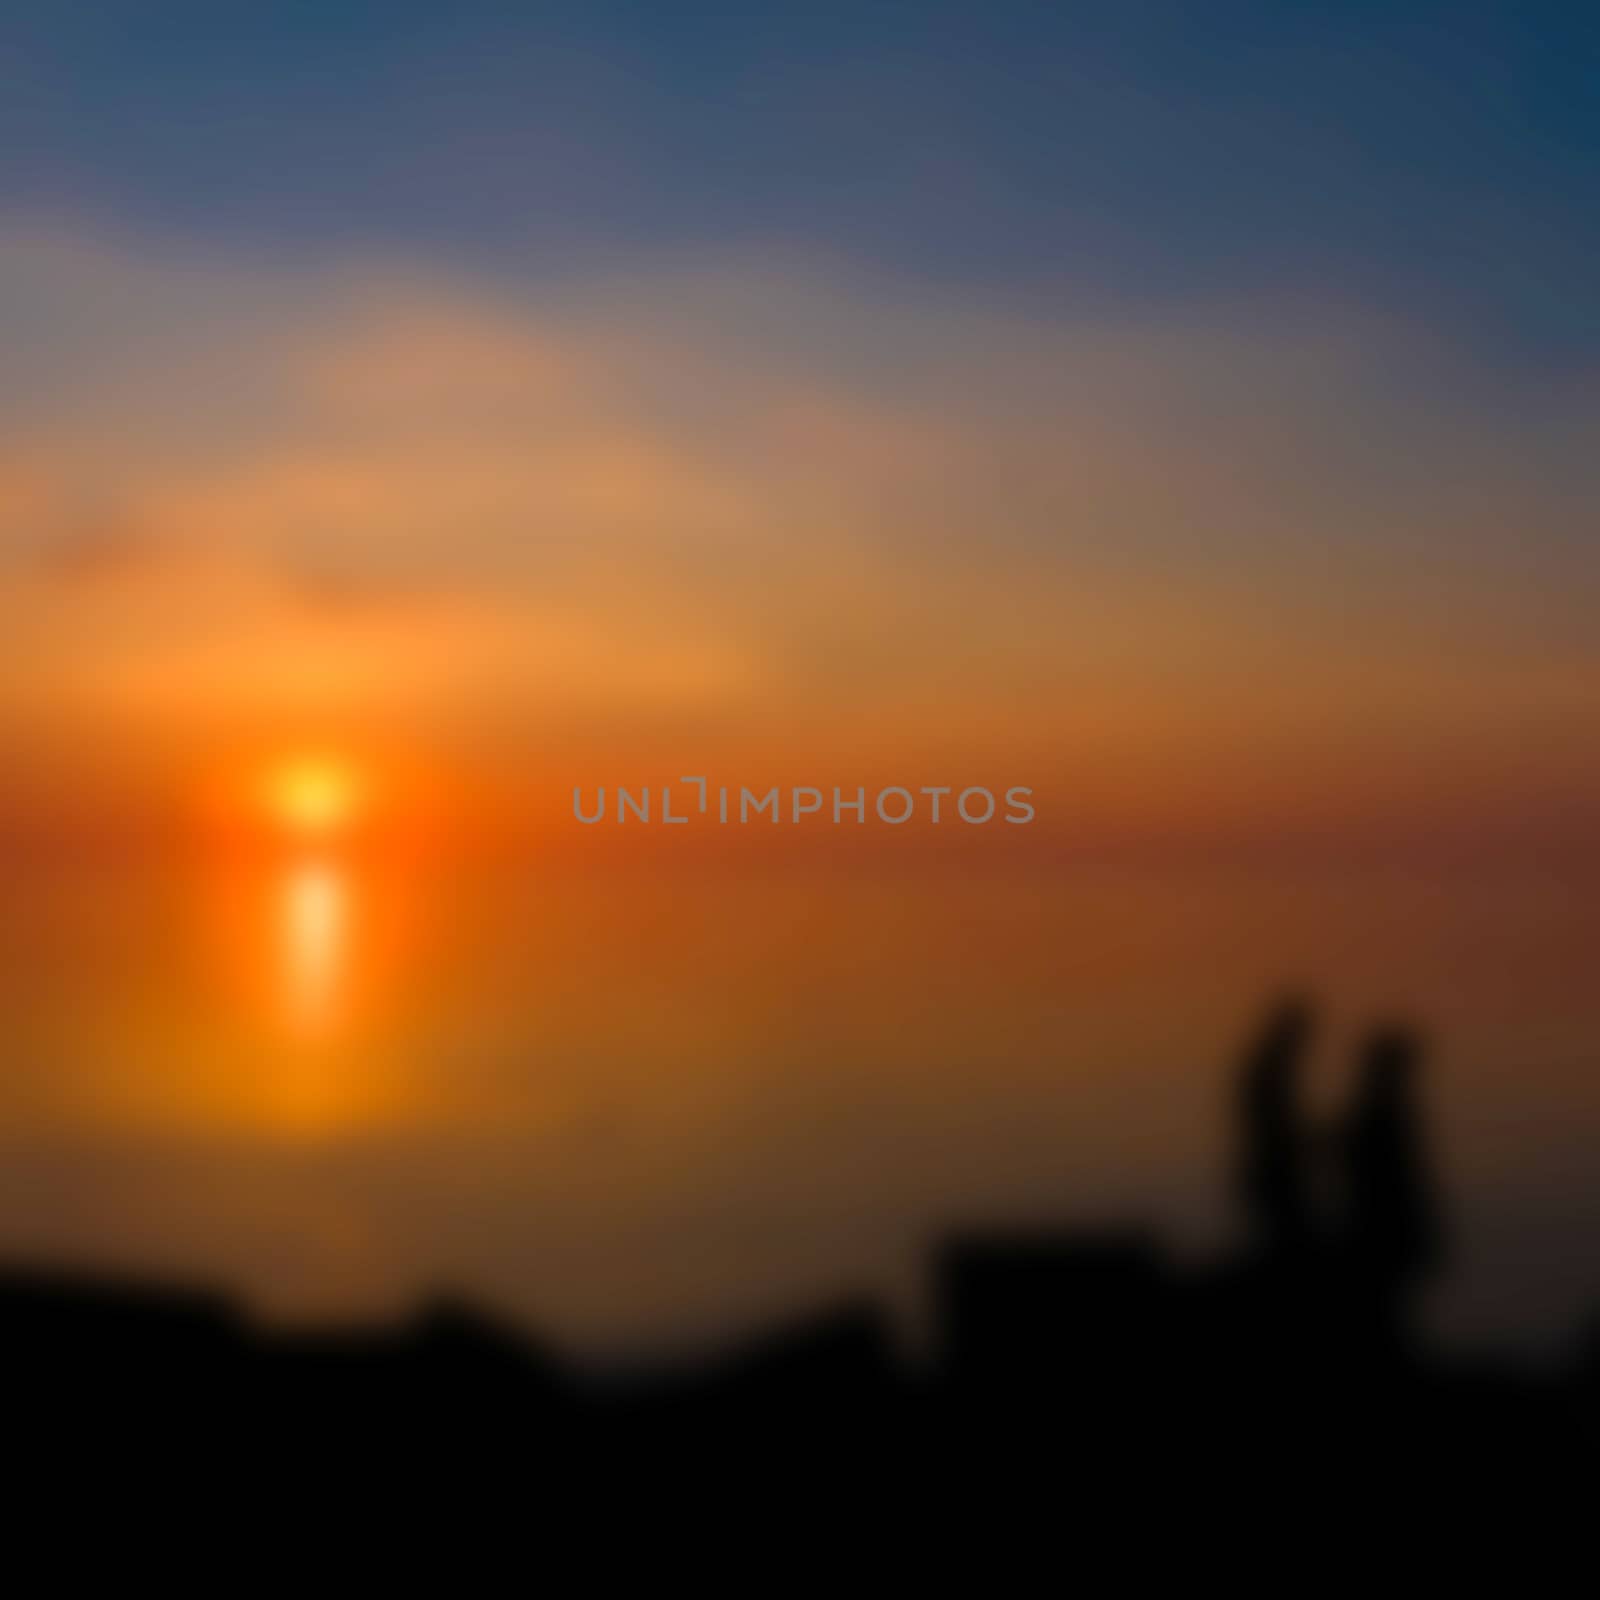 Gold sunset - soft lens bokeh image. Defocused background